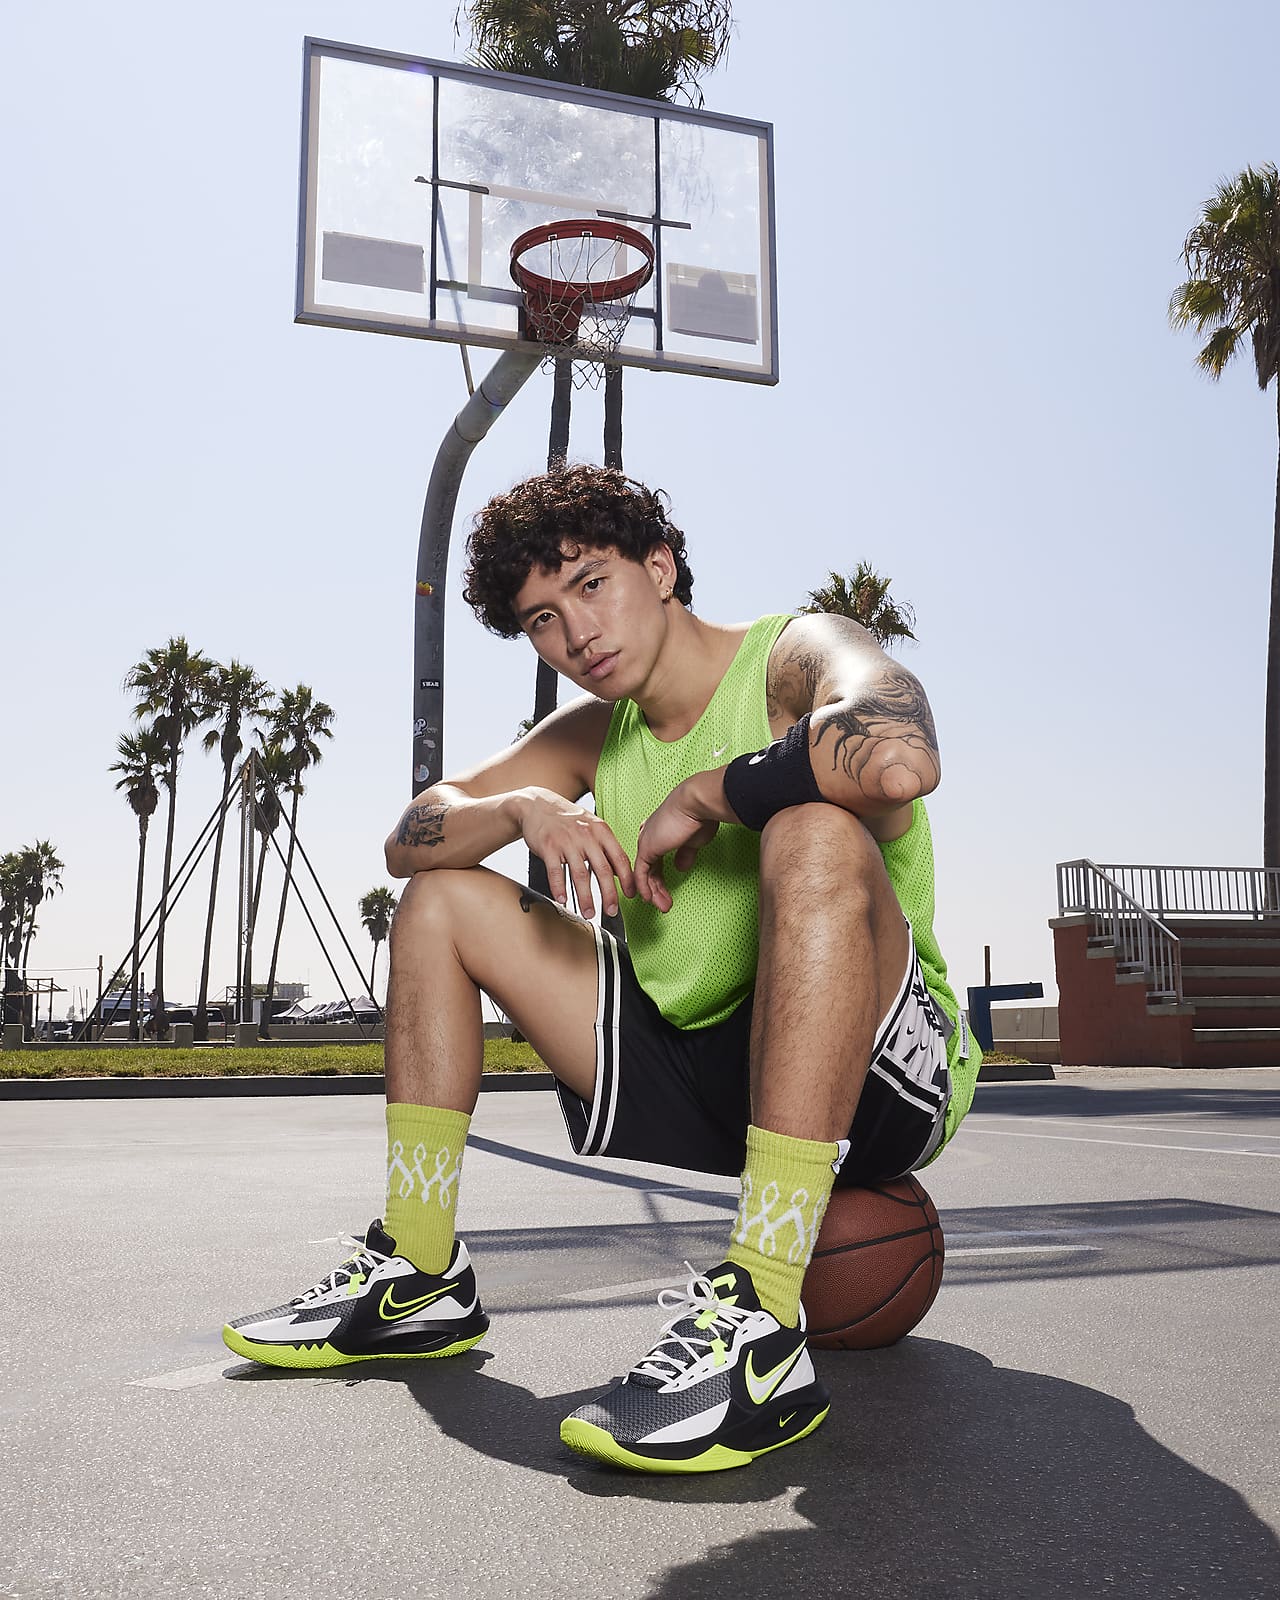 Baloncesto · Nike · Niños · Deportes · El Corte Inglés (14)